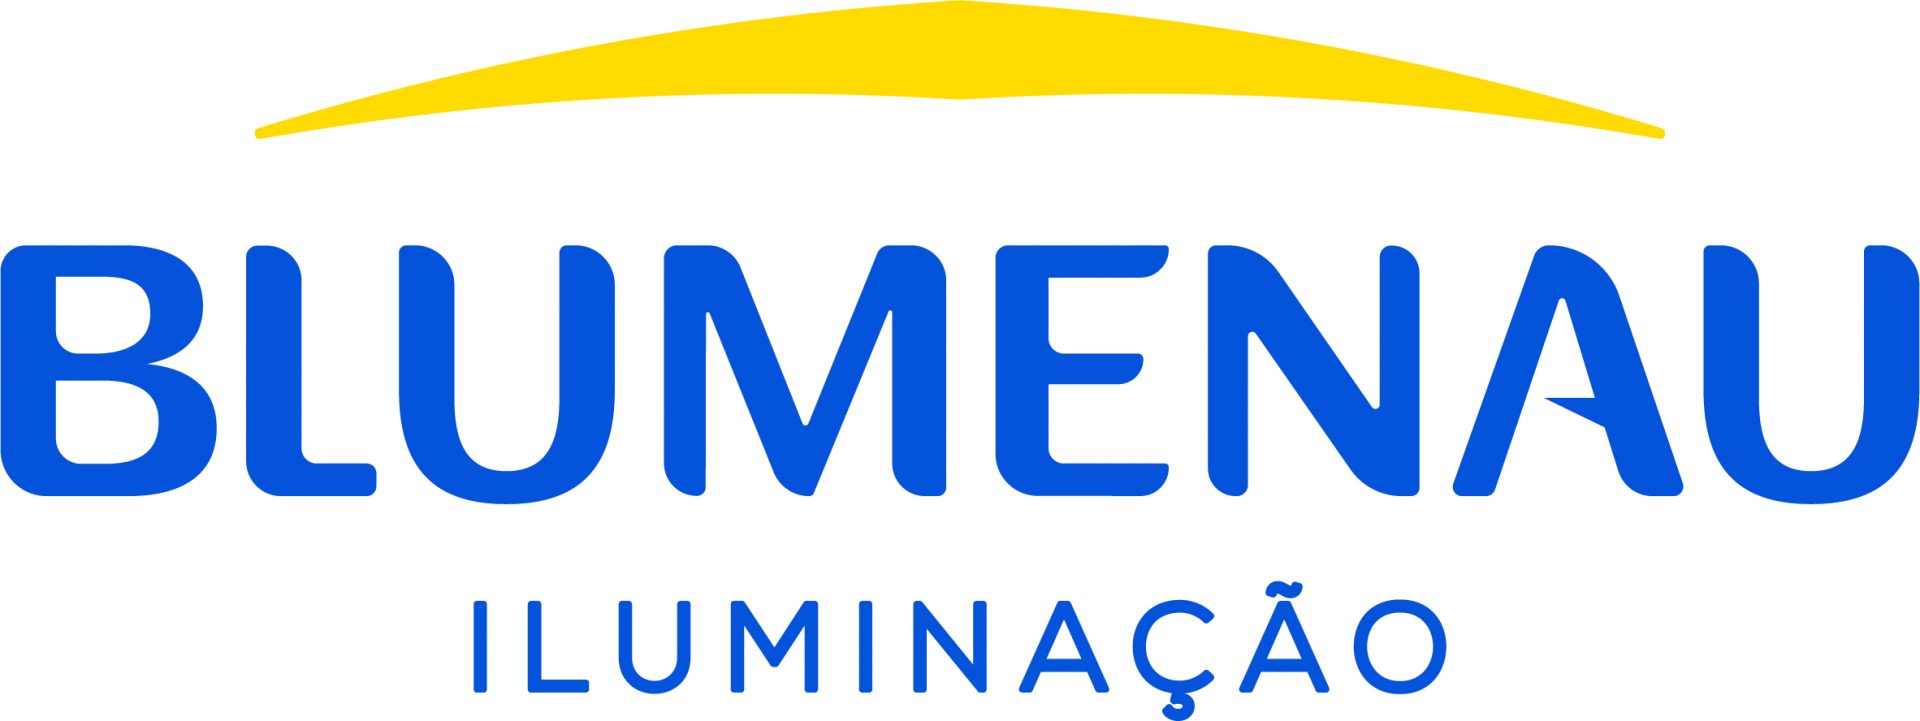 Blumenau Iluminacao – Logo CMYK